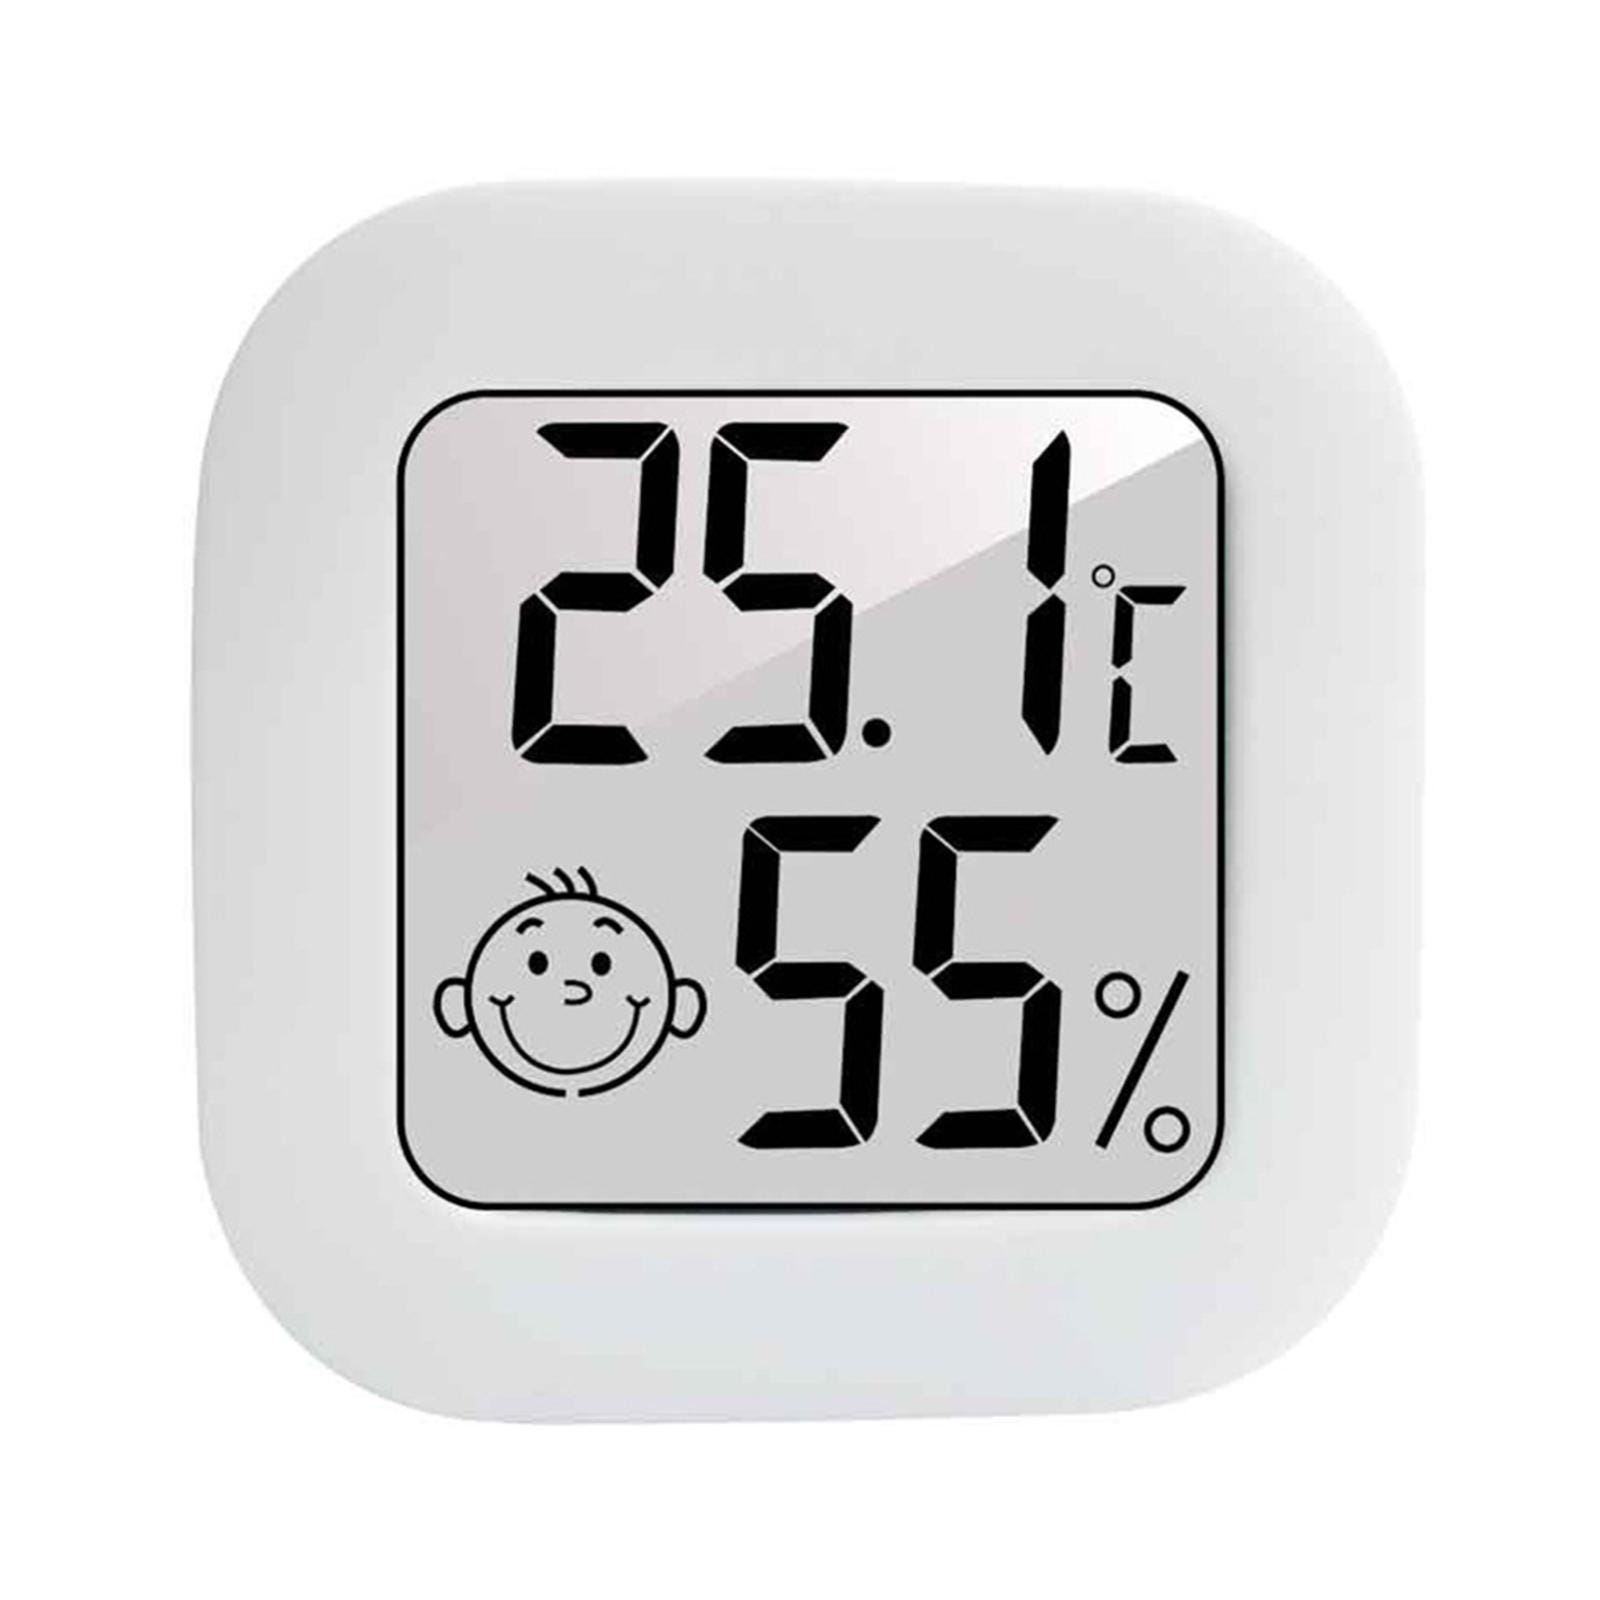 Mini Thermomètre Hygromètre Numérique LCD Intérieur pour Maison - Capteur  de Température et d'Humidité électronique